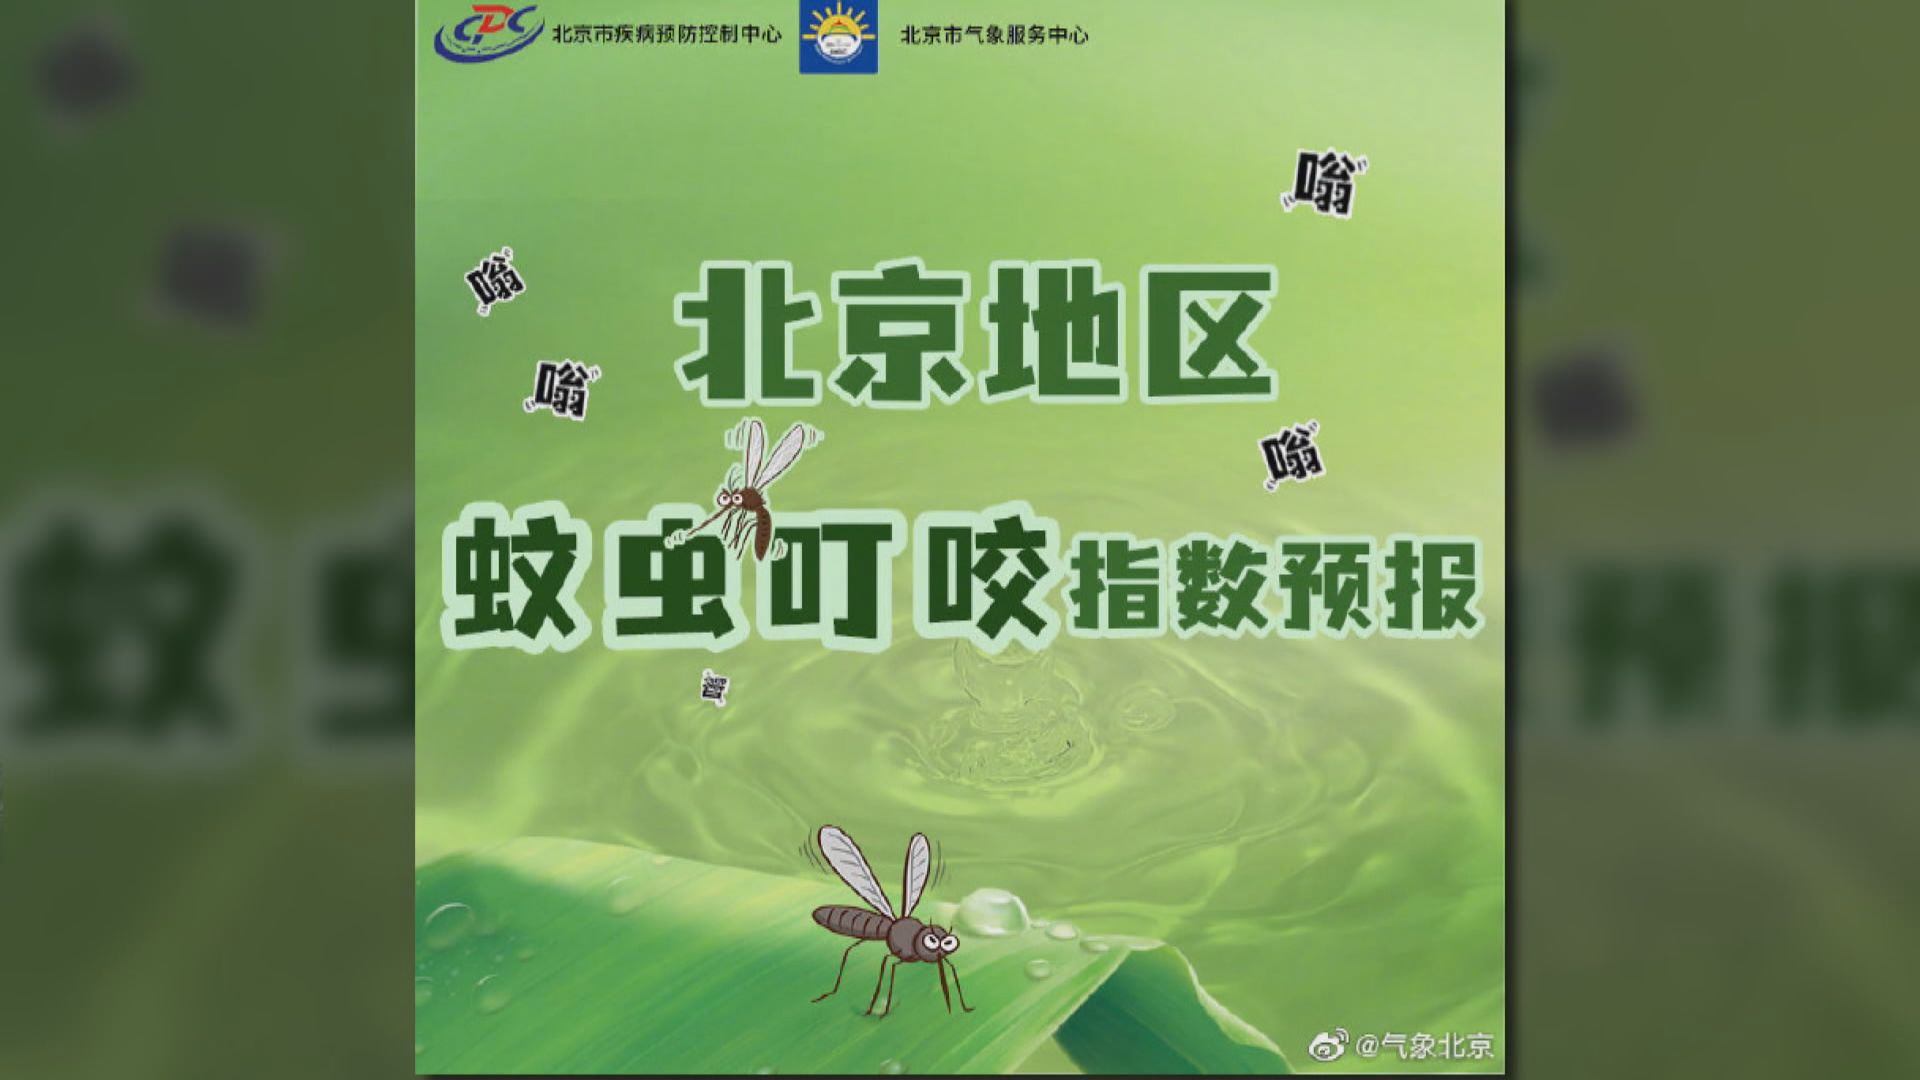 【環球薈報】北京啟用「蚊蟲叮咬指數」預報系統